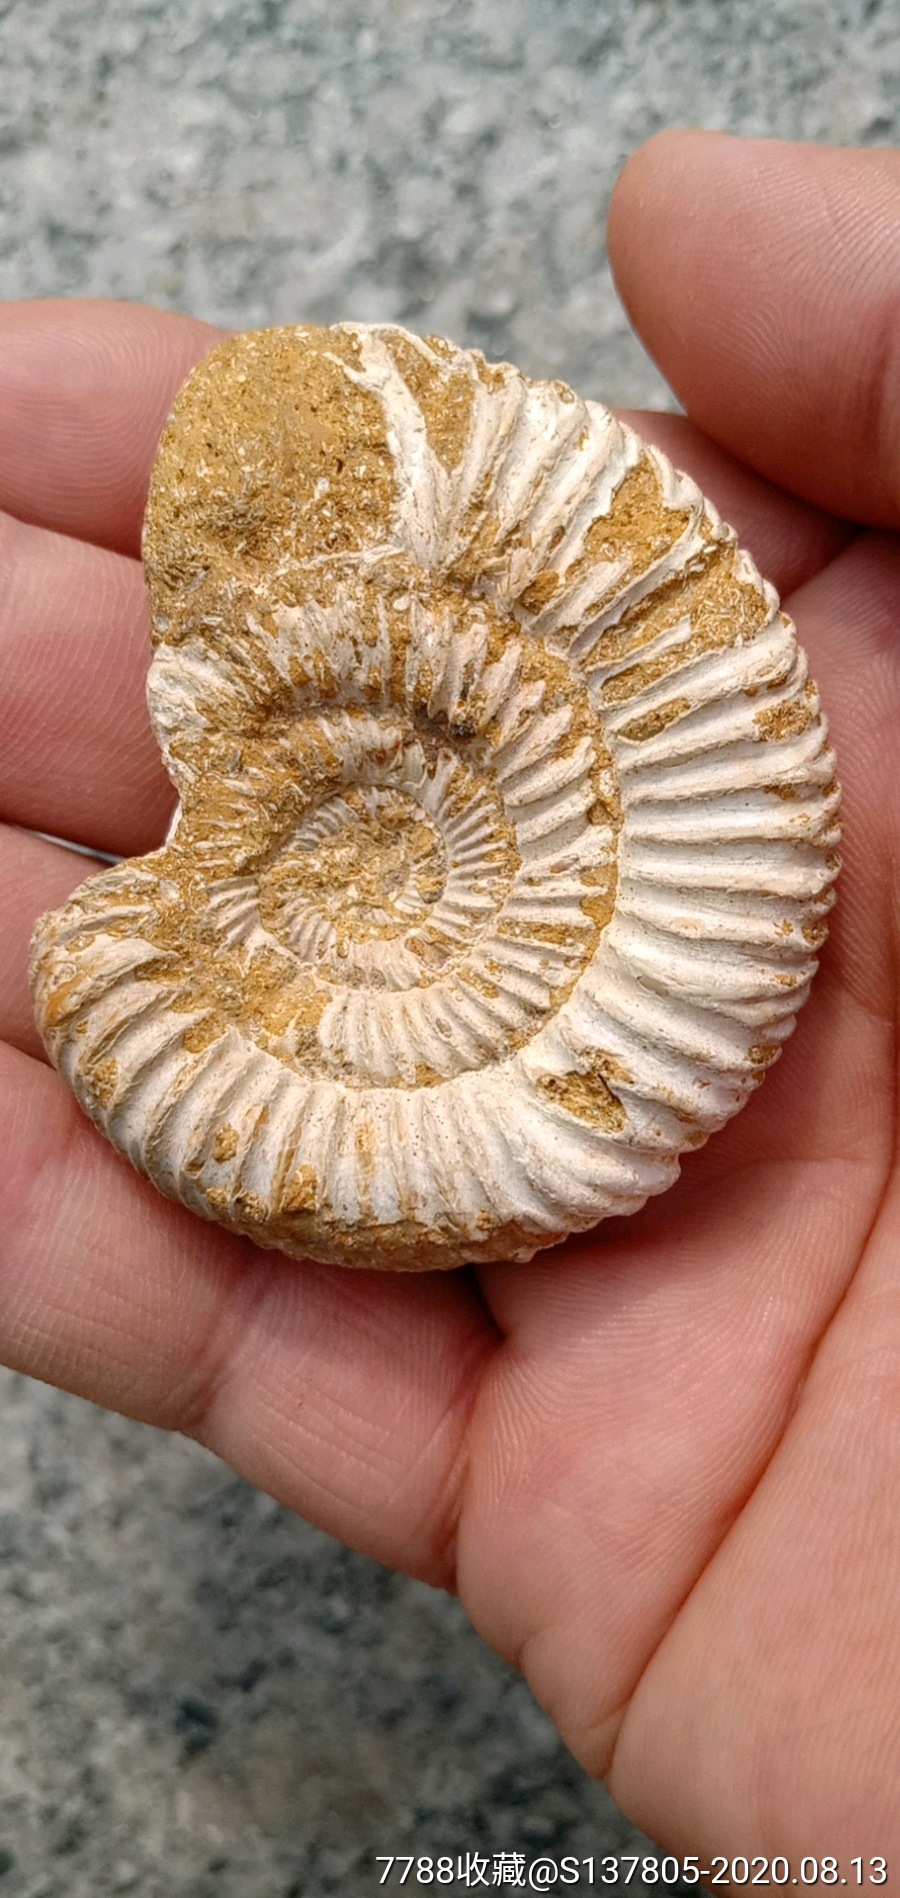 海螺化石贝壳化石